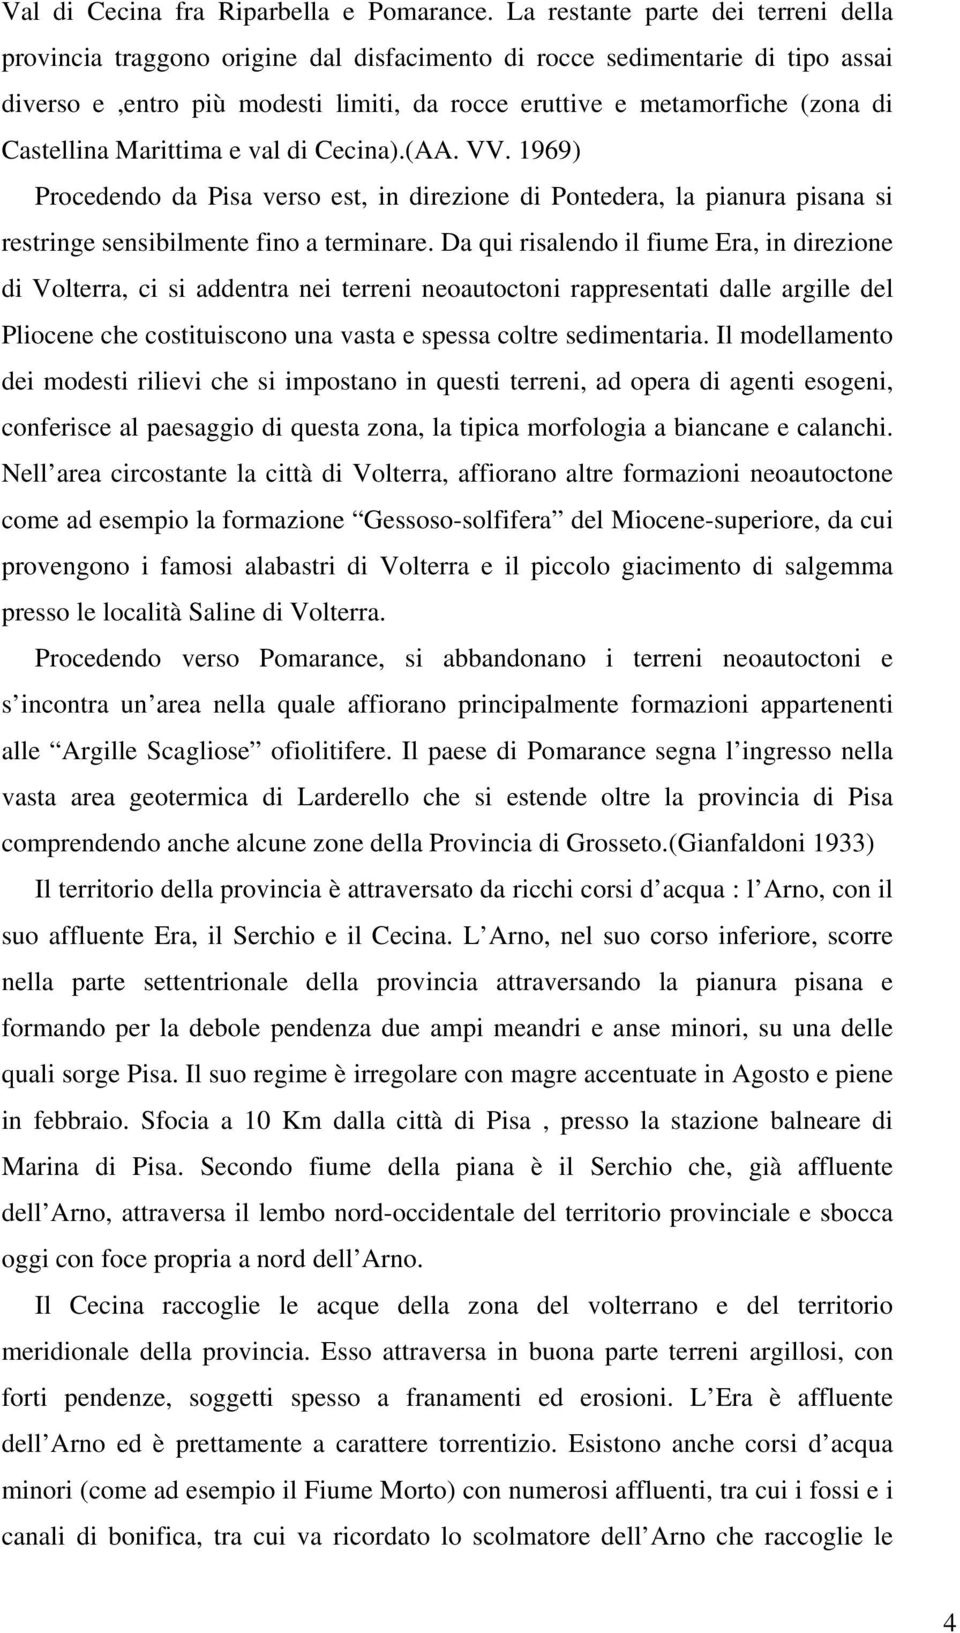 Castellina Marittima e val di Cecina).(AA. VV. 1969) Procedendo da Pisa verso est, in direzione di Pontedera, la pianura pisana si restringe sensibilmente fino a terminare.